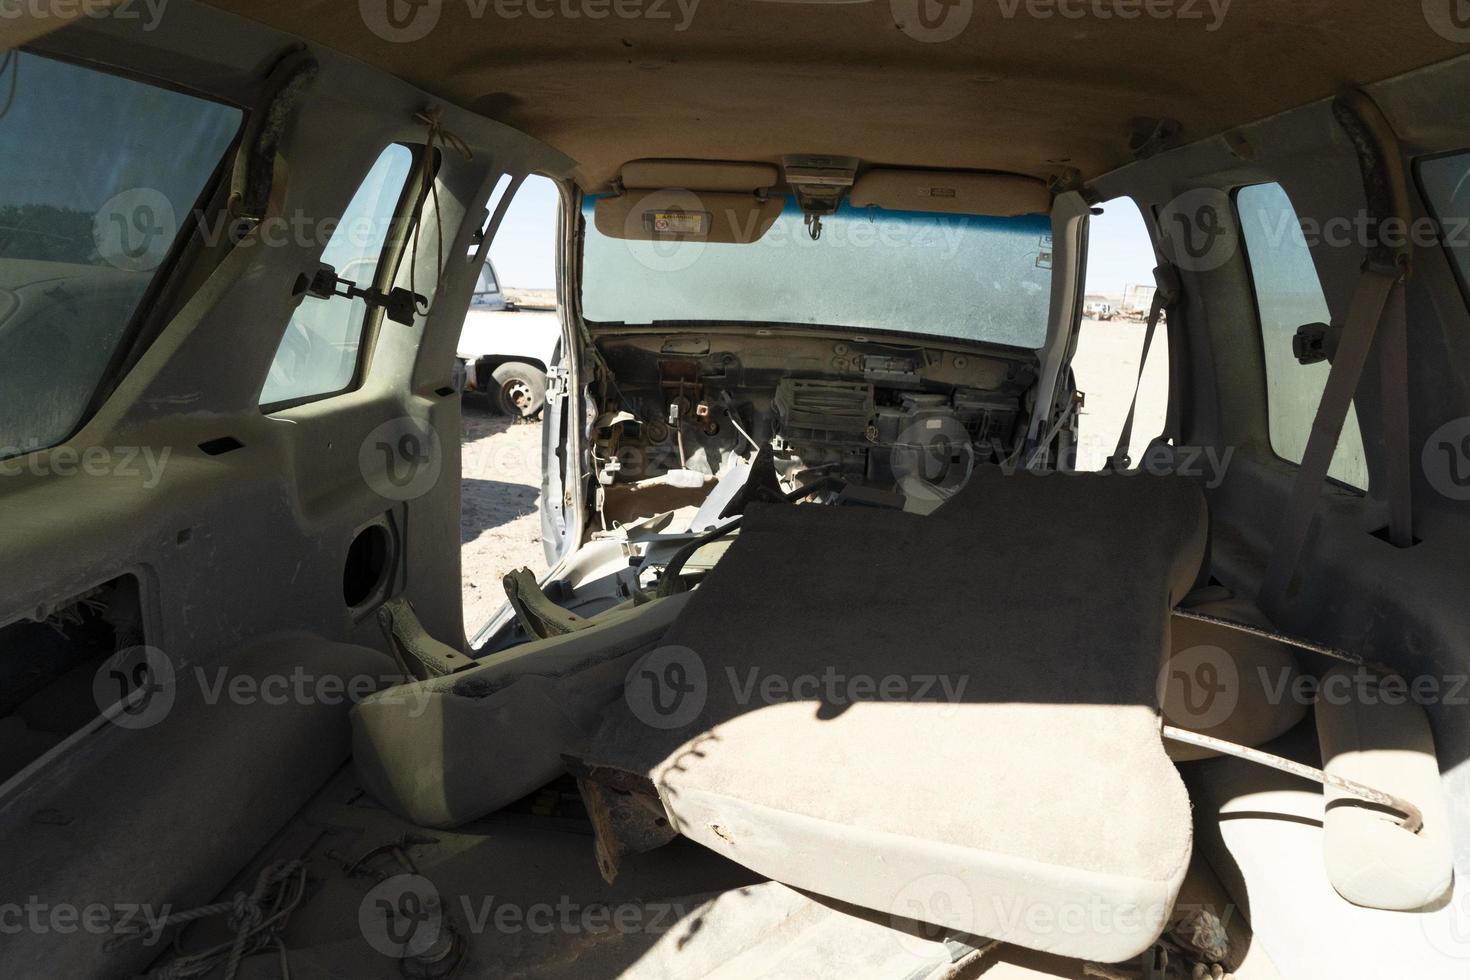 viejo coche abandonado en depósito de chatarra en baja california sur mexico foto